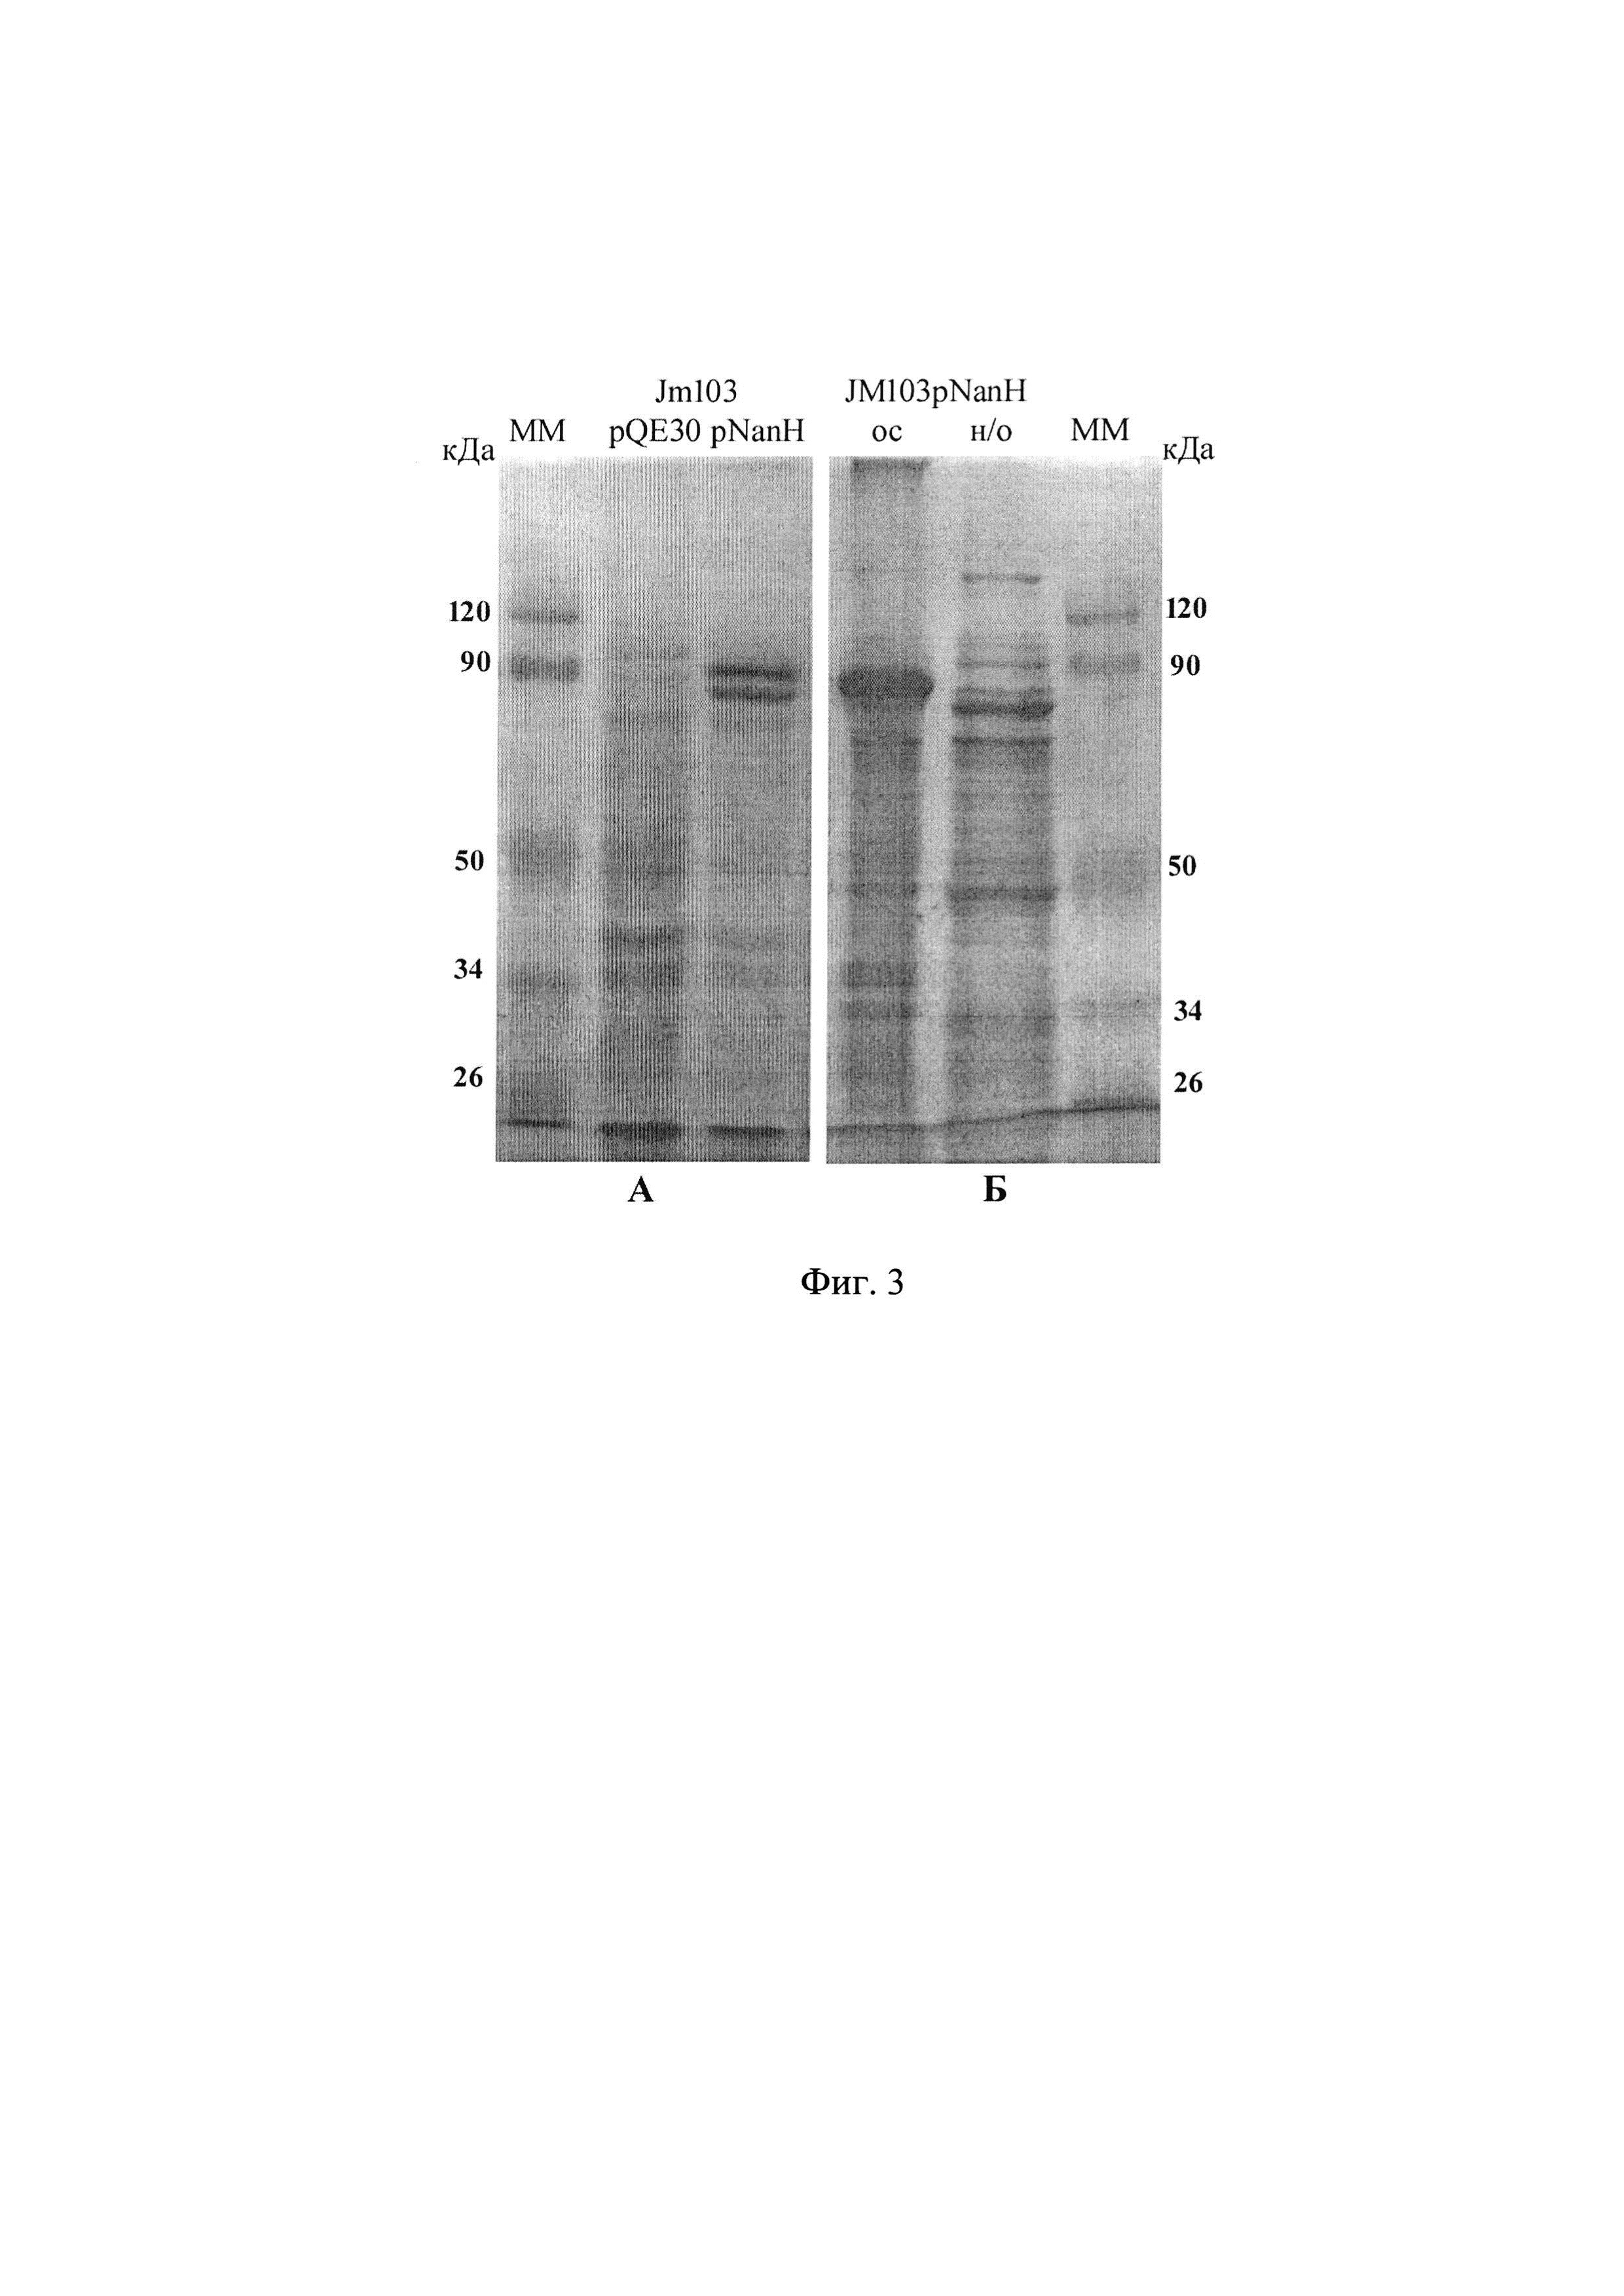 Рекомбинантная плазмида, экспрессирующая клонированный ген нейраминидазы Vibrio cholerae, и штамм Escherichia coli - суперпродуцент нейраминидазы Vibrio cholerae